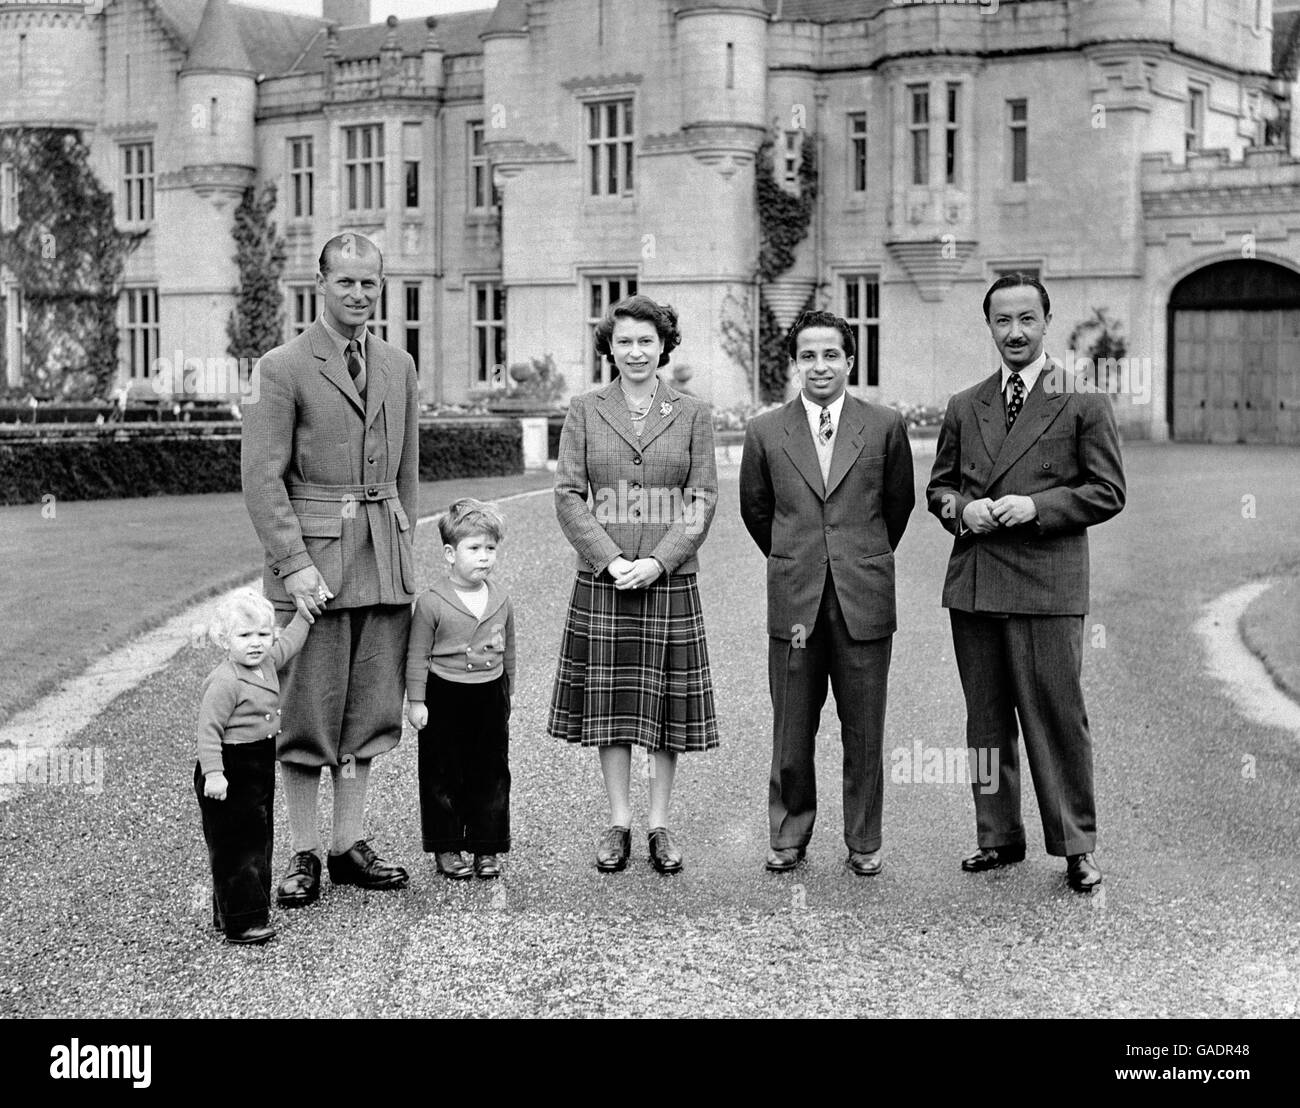 La reine Elizabeth II, portant une jupe tartan et une veste en tweed devant le château de Balmoral avec ses visiteurs royaux, le roi Fayçal II et le Régent d'Irak, et le duc d'Édimbourg, le prince Charles et la princesse Anne. Banque D'Images